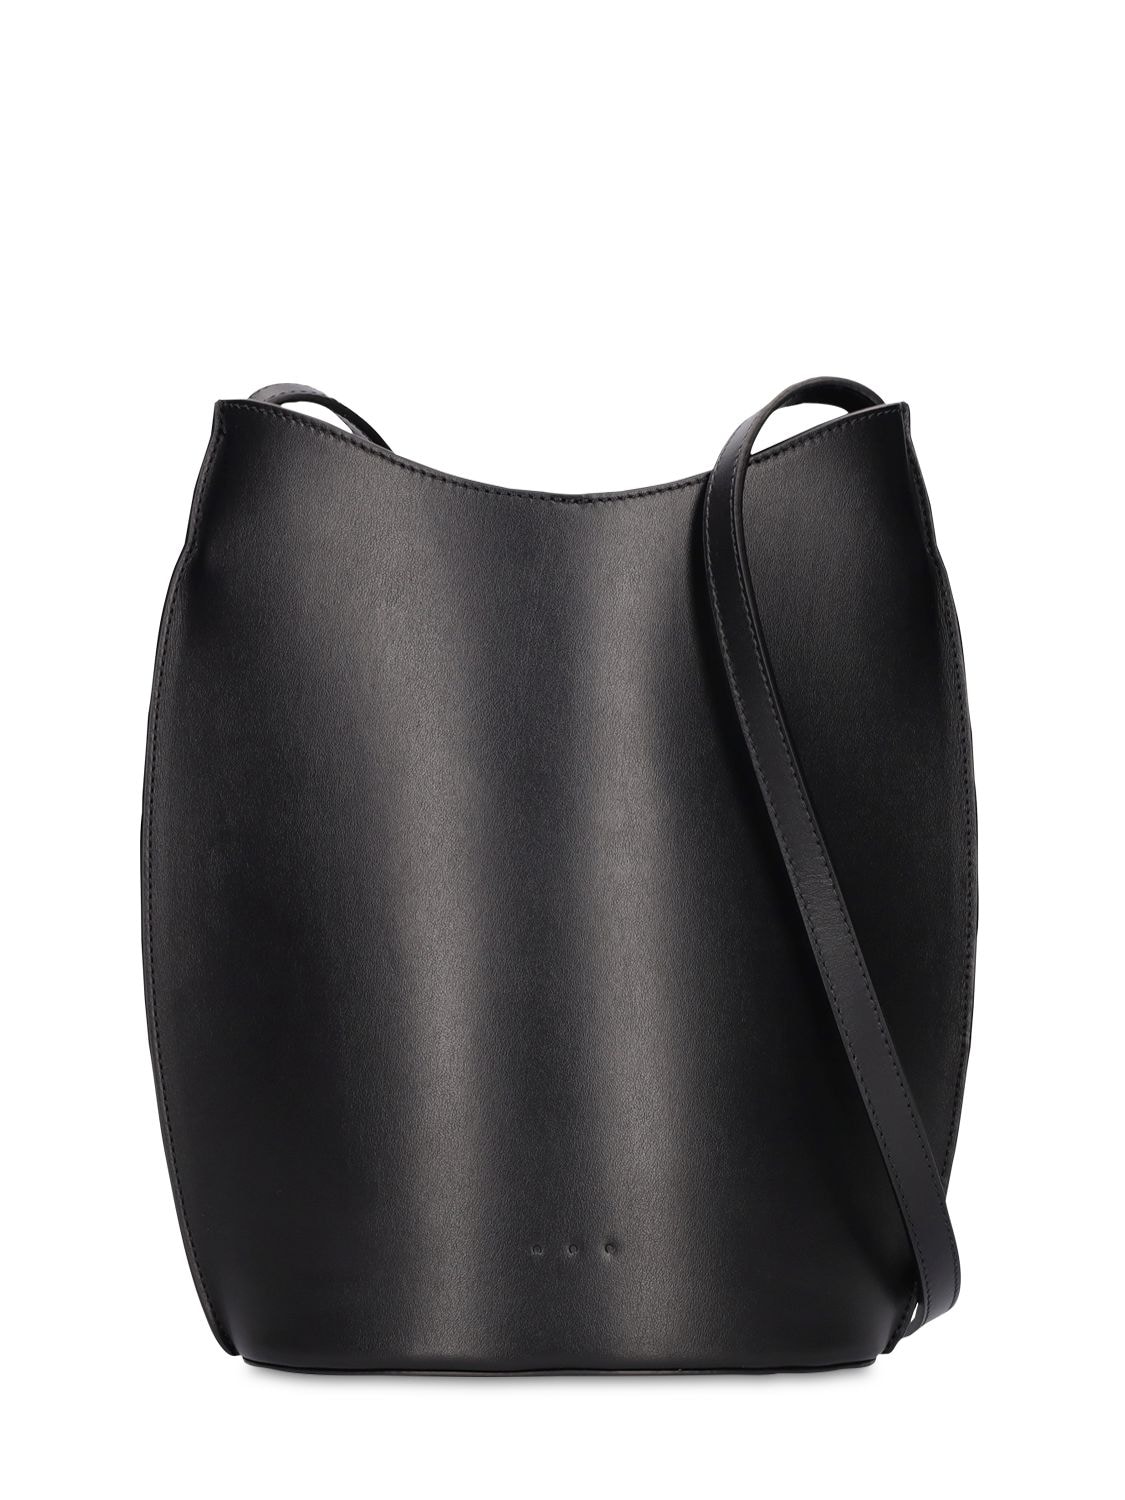 Sac Ovale Smooth Leather Shoulder Bag